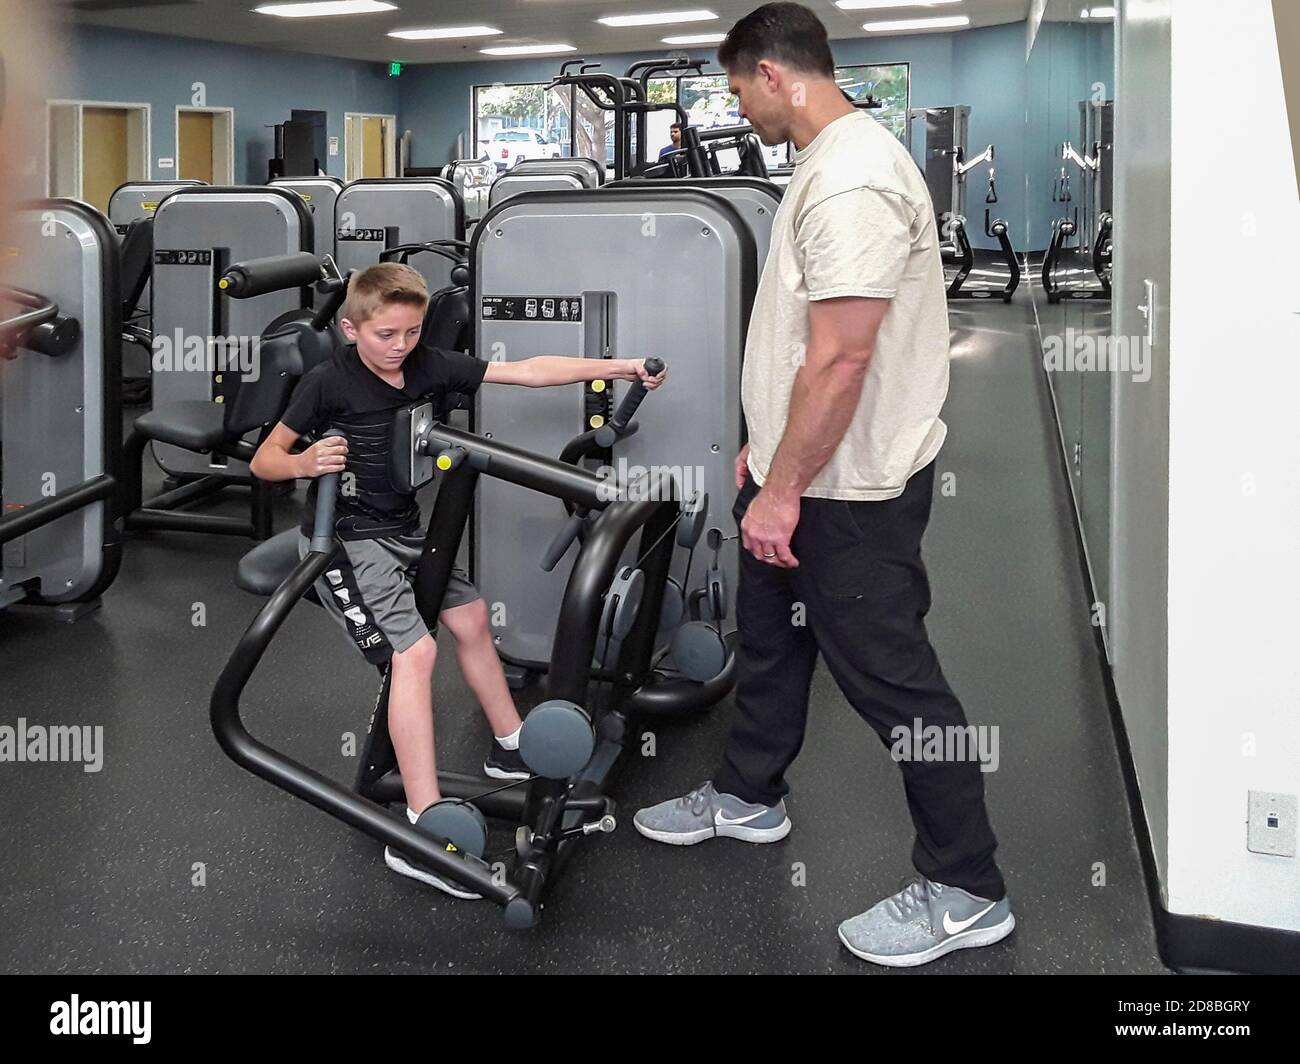 Mentre suo padre guarda, un ragazzo lavora su una macchina da ginnastica in una palestra della California del Sud. Foto Stock